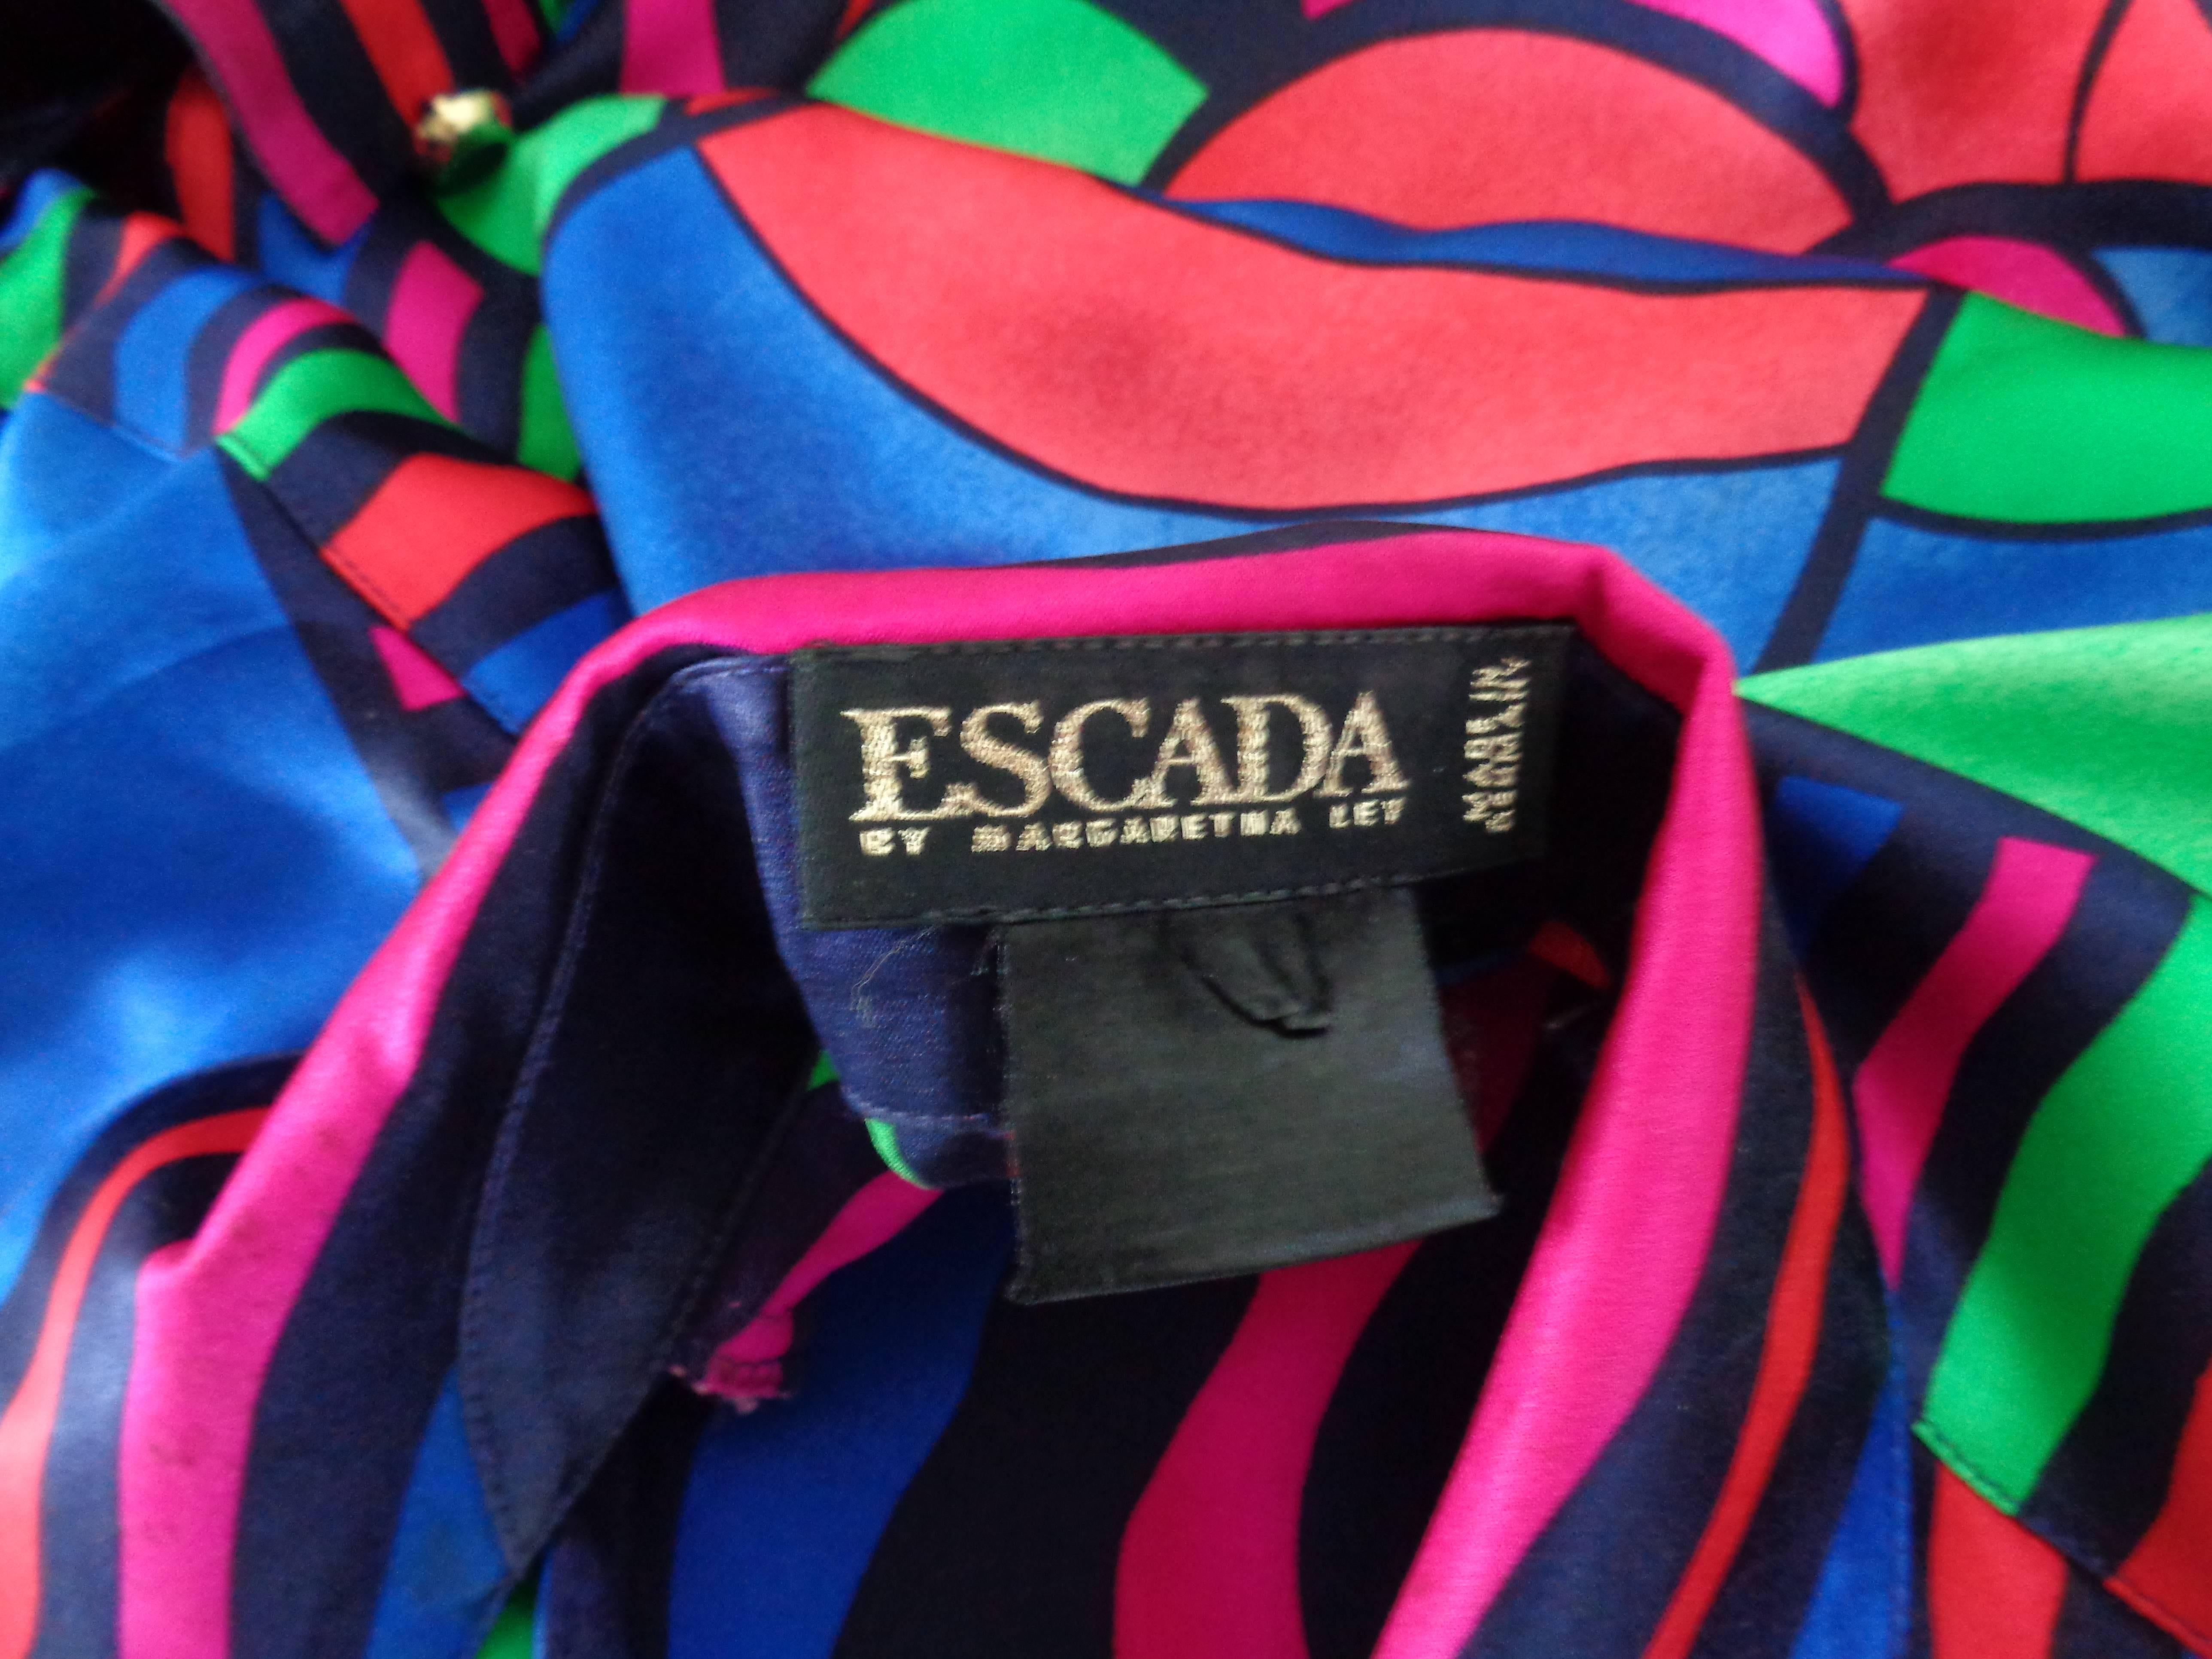 Black Escada by Margaretha Ley Silk Shirt